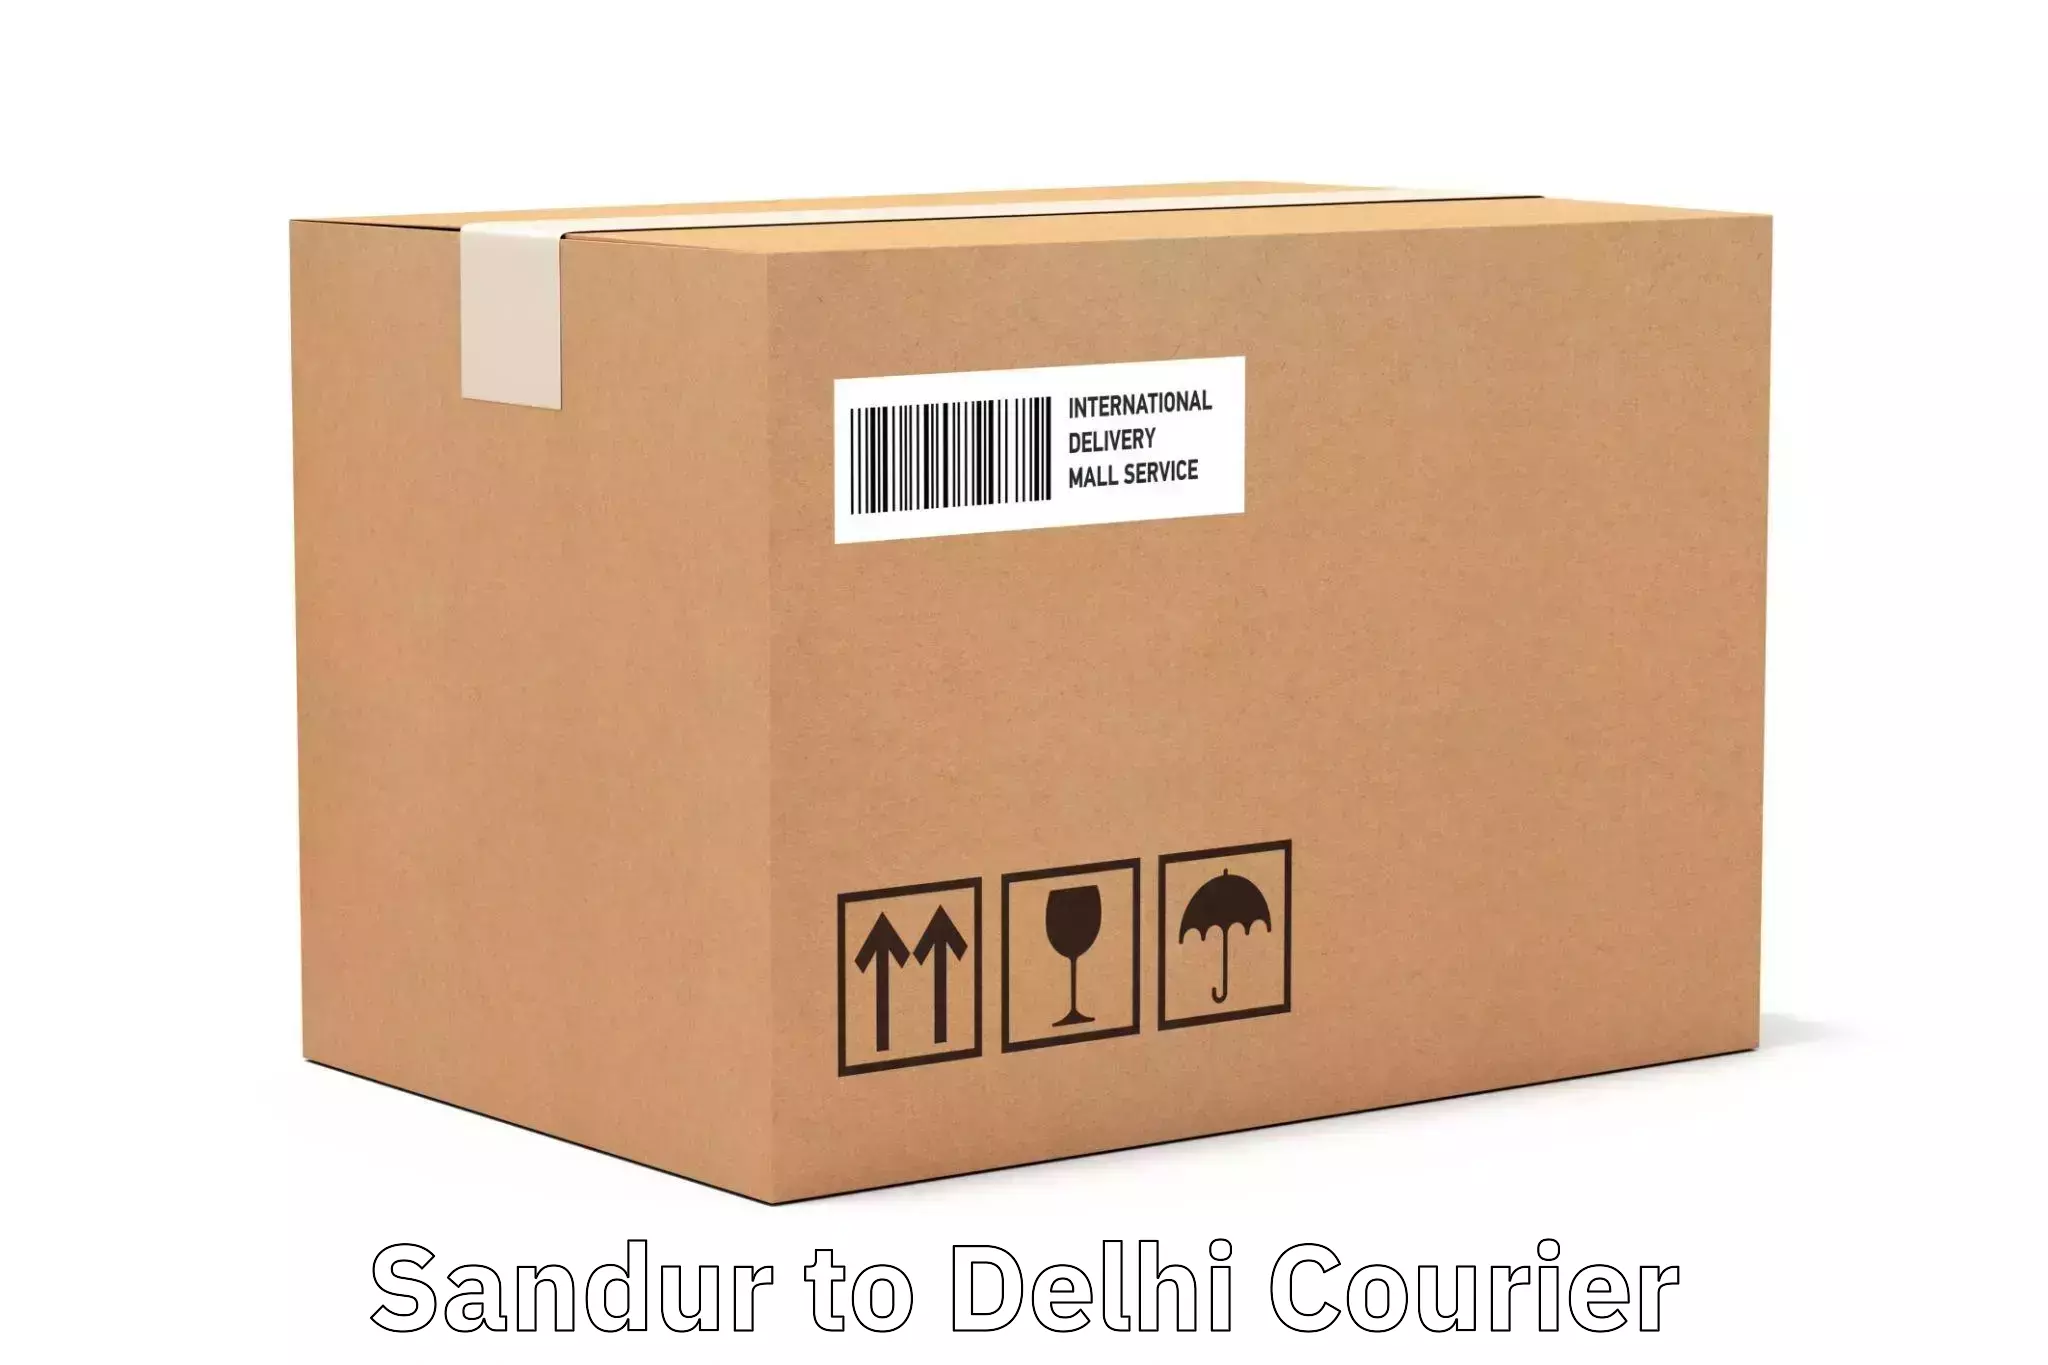 Efficient parcel service Sandur to NCR